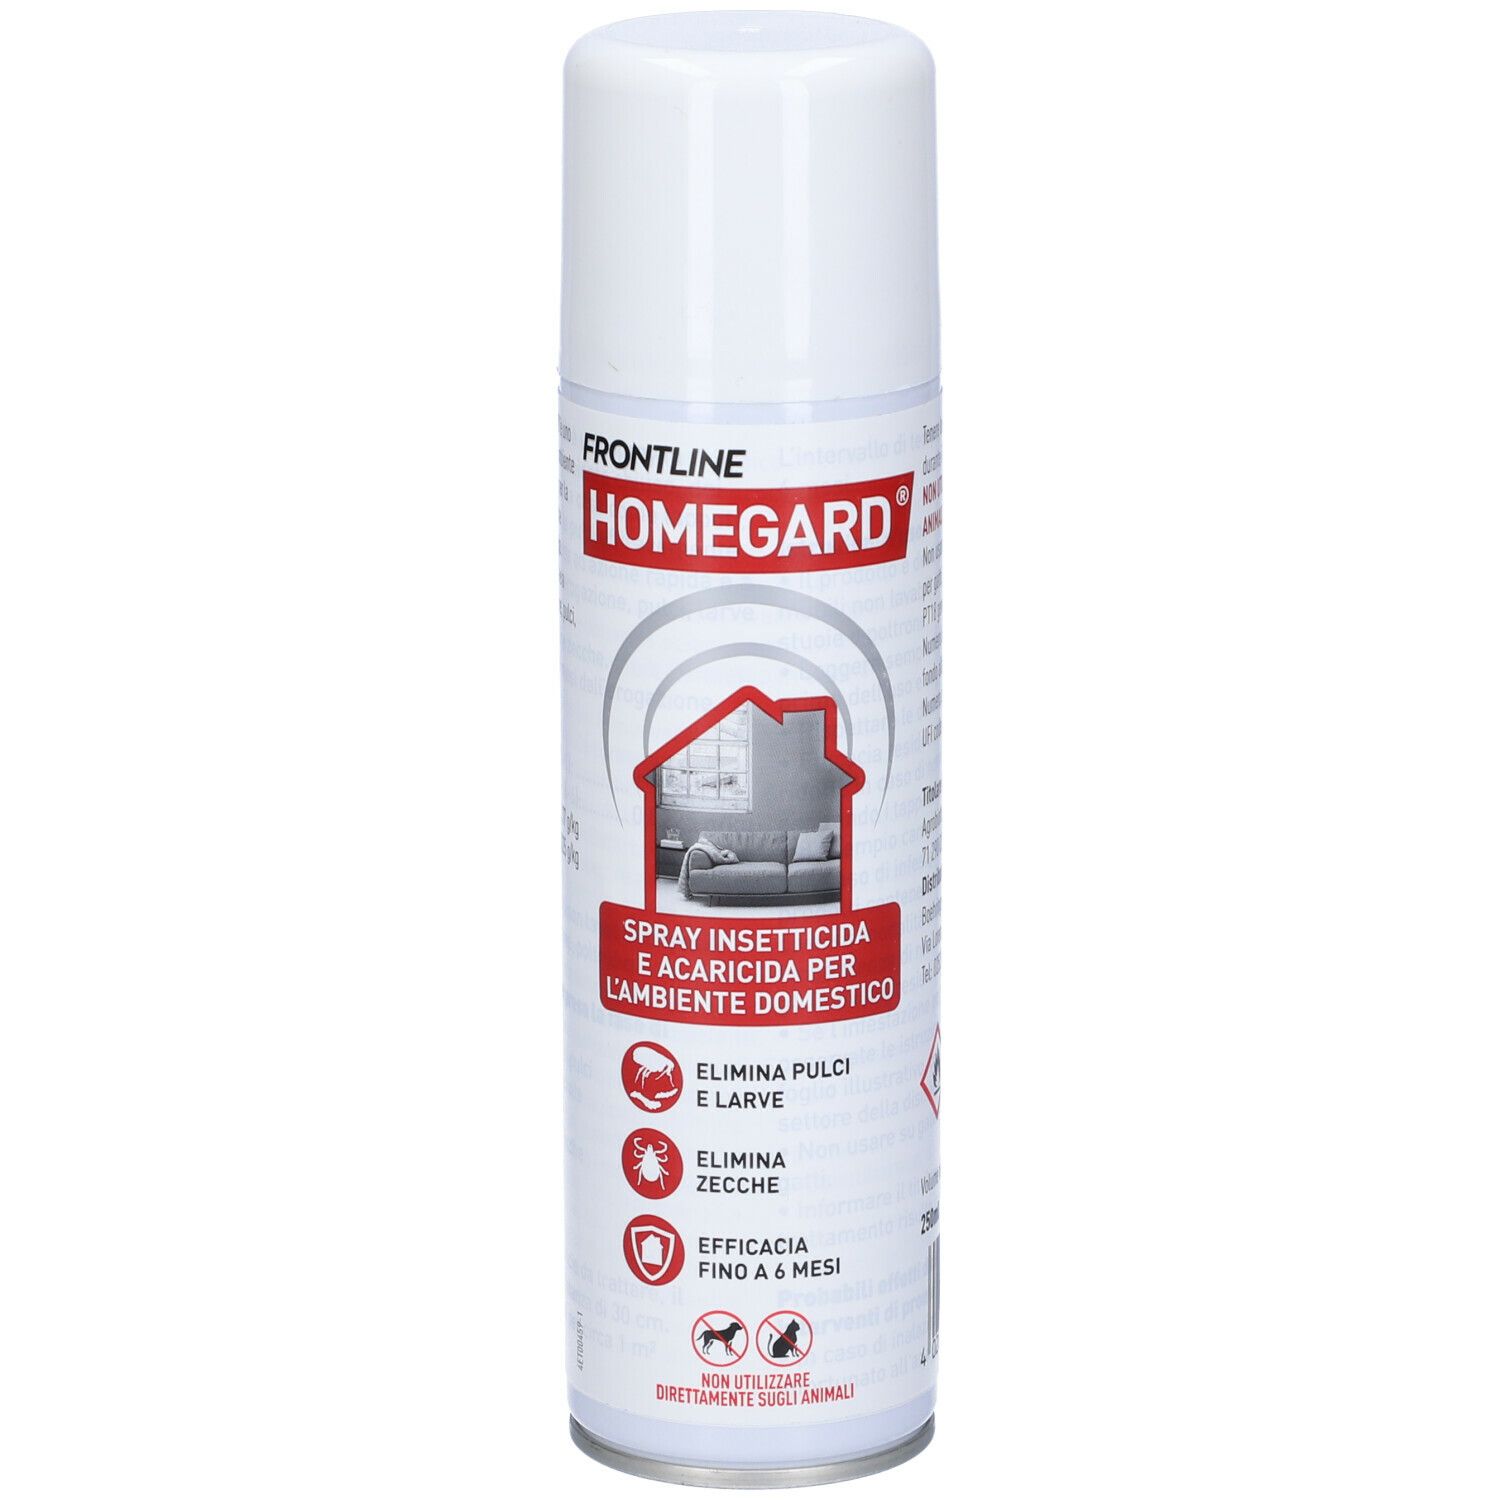 Frontline Homegard Spray Insetticida E Acaricida Per L'ambiente Domestico